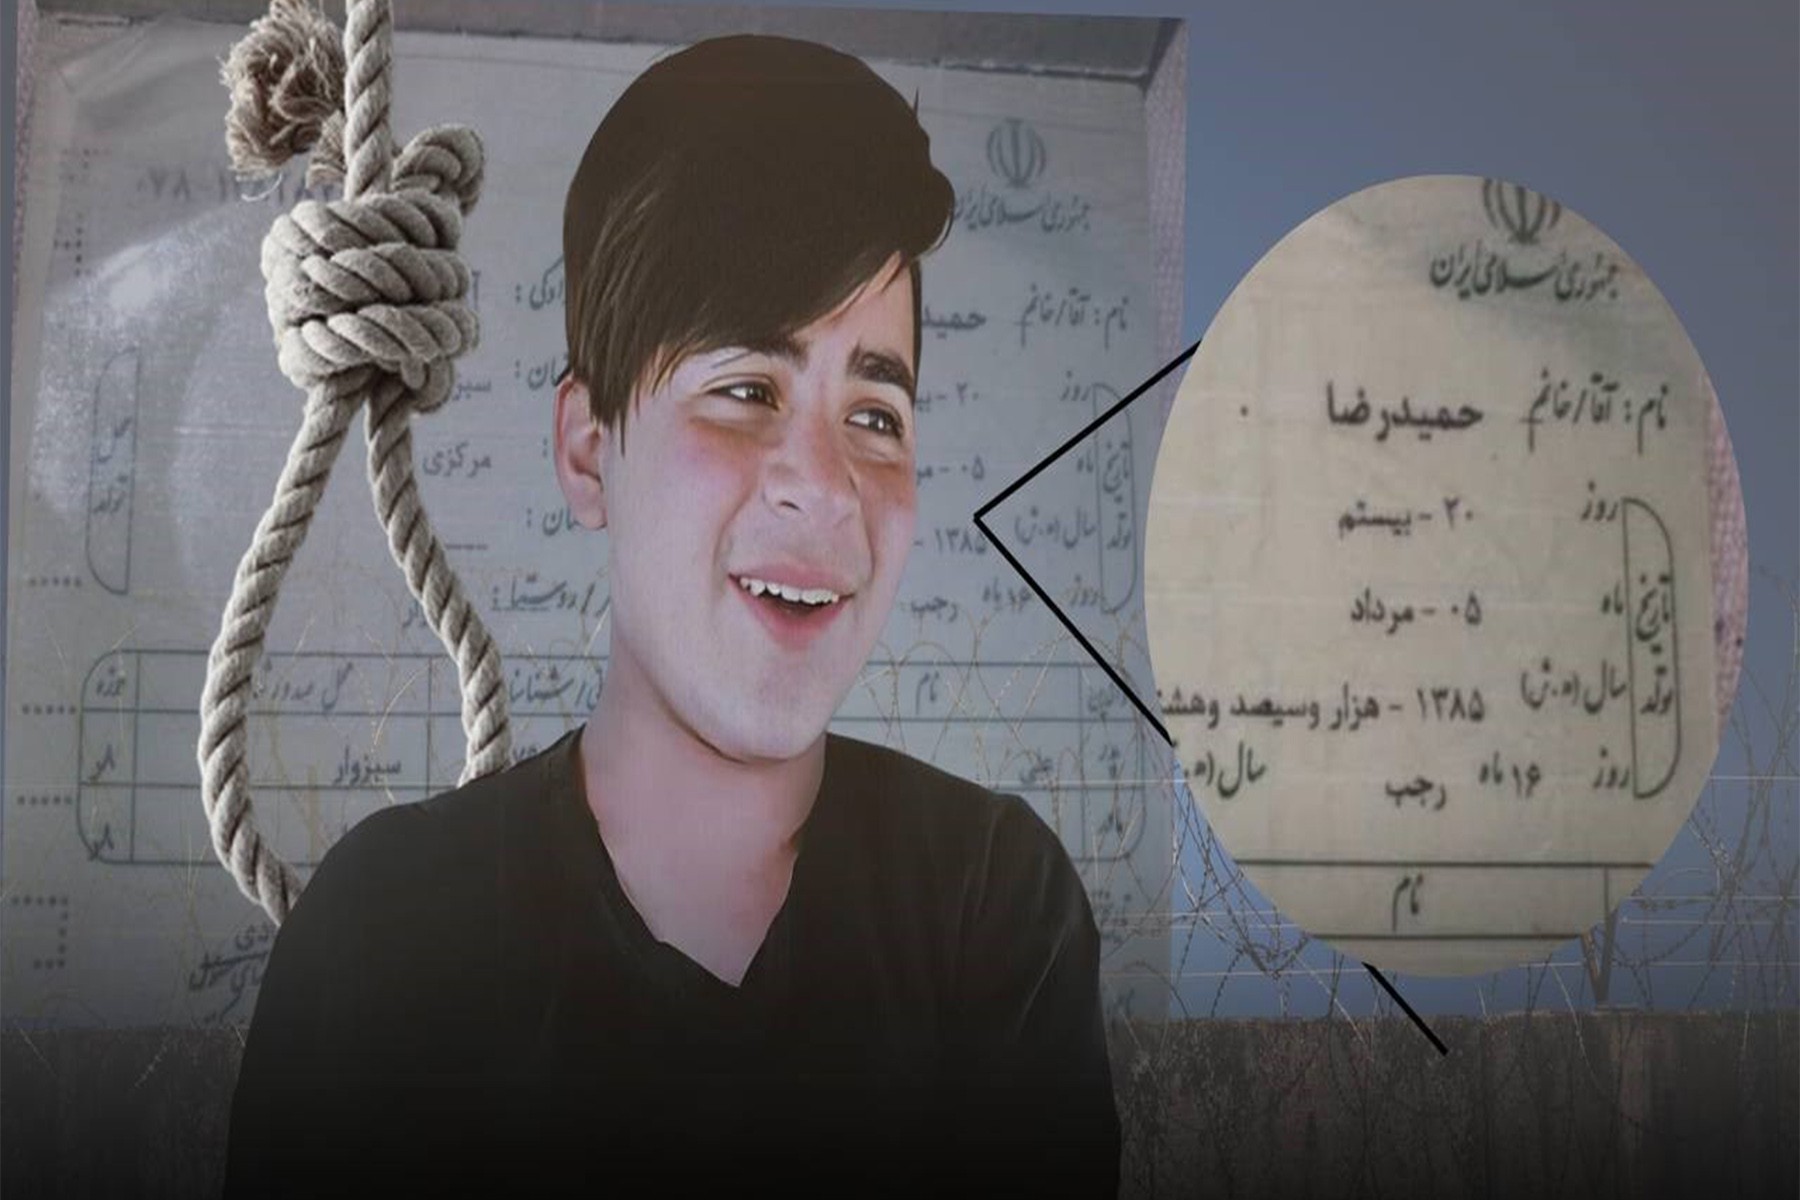 اعدام یک کودک در ایران توسط دفتر حقوق بشر سازمان ملل متحد محکوم شد